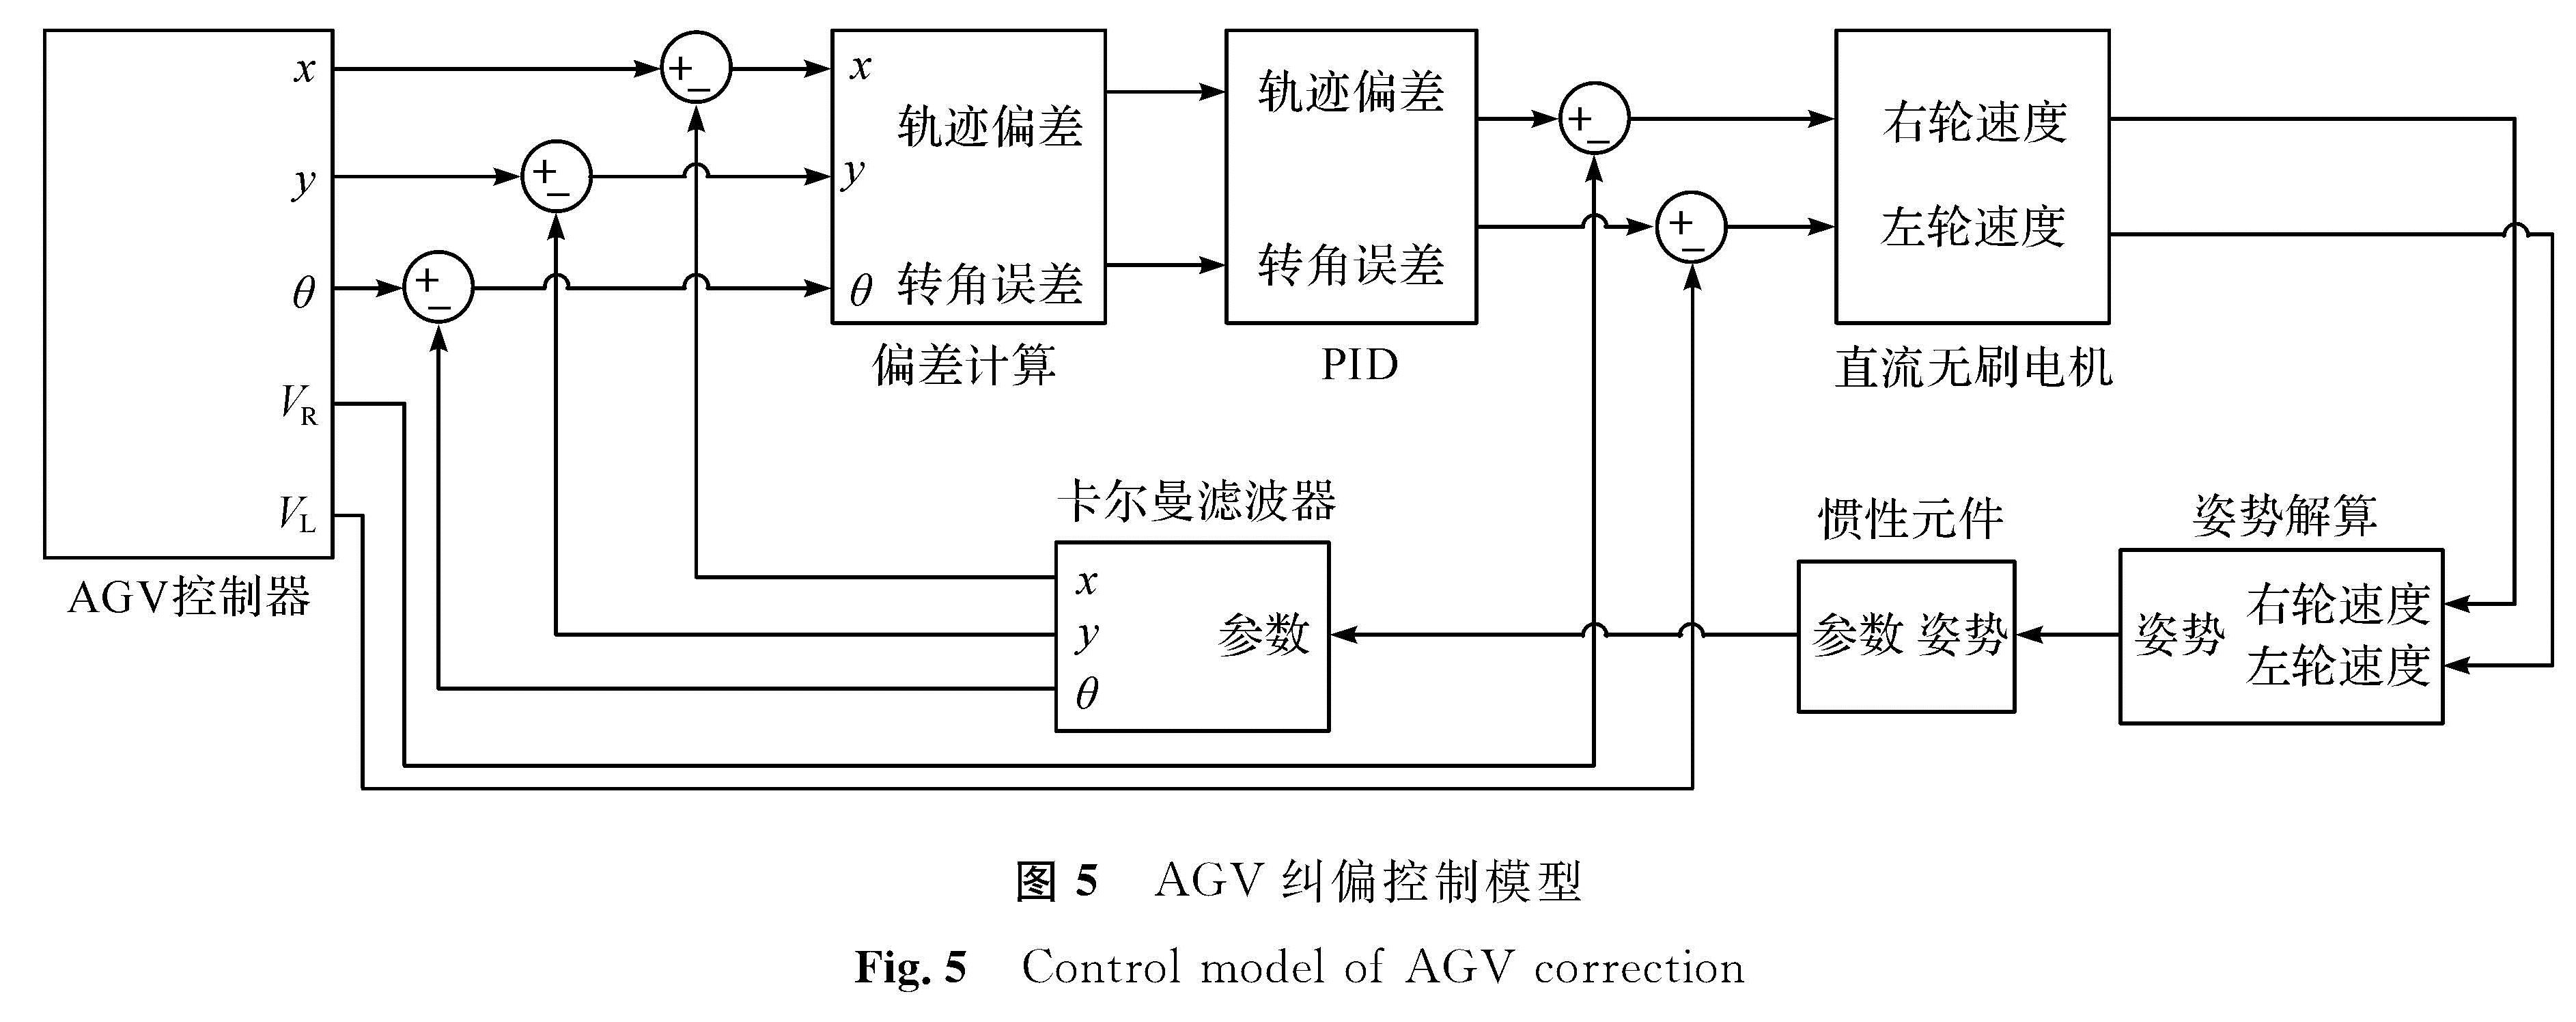 图5 AGV纠偏控制模型<br/>Fig.5 Control model of AGV correction